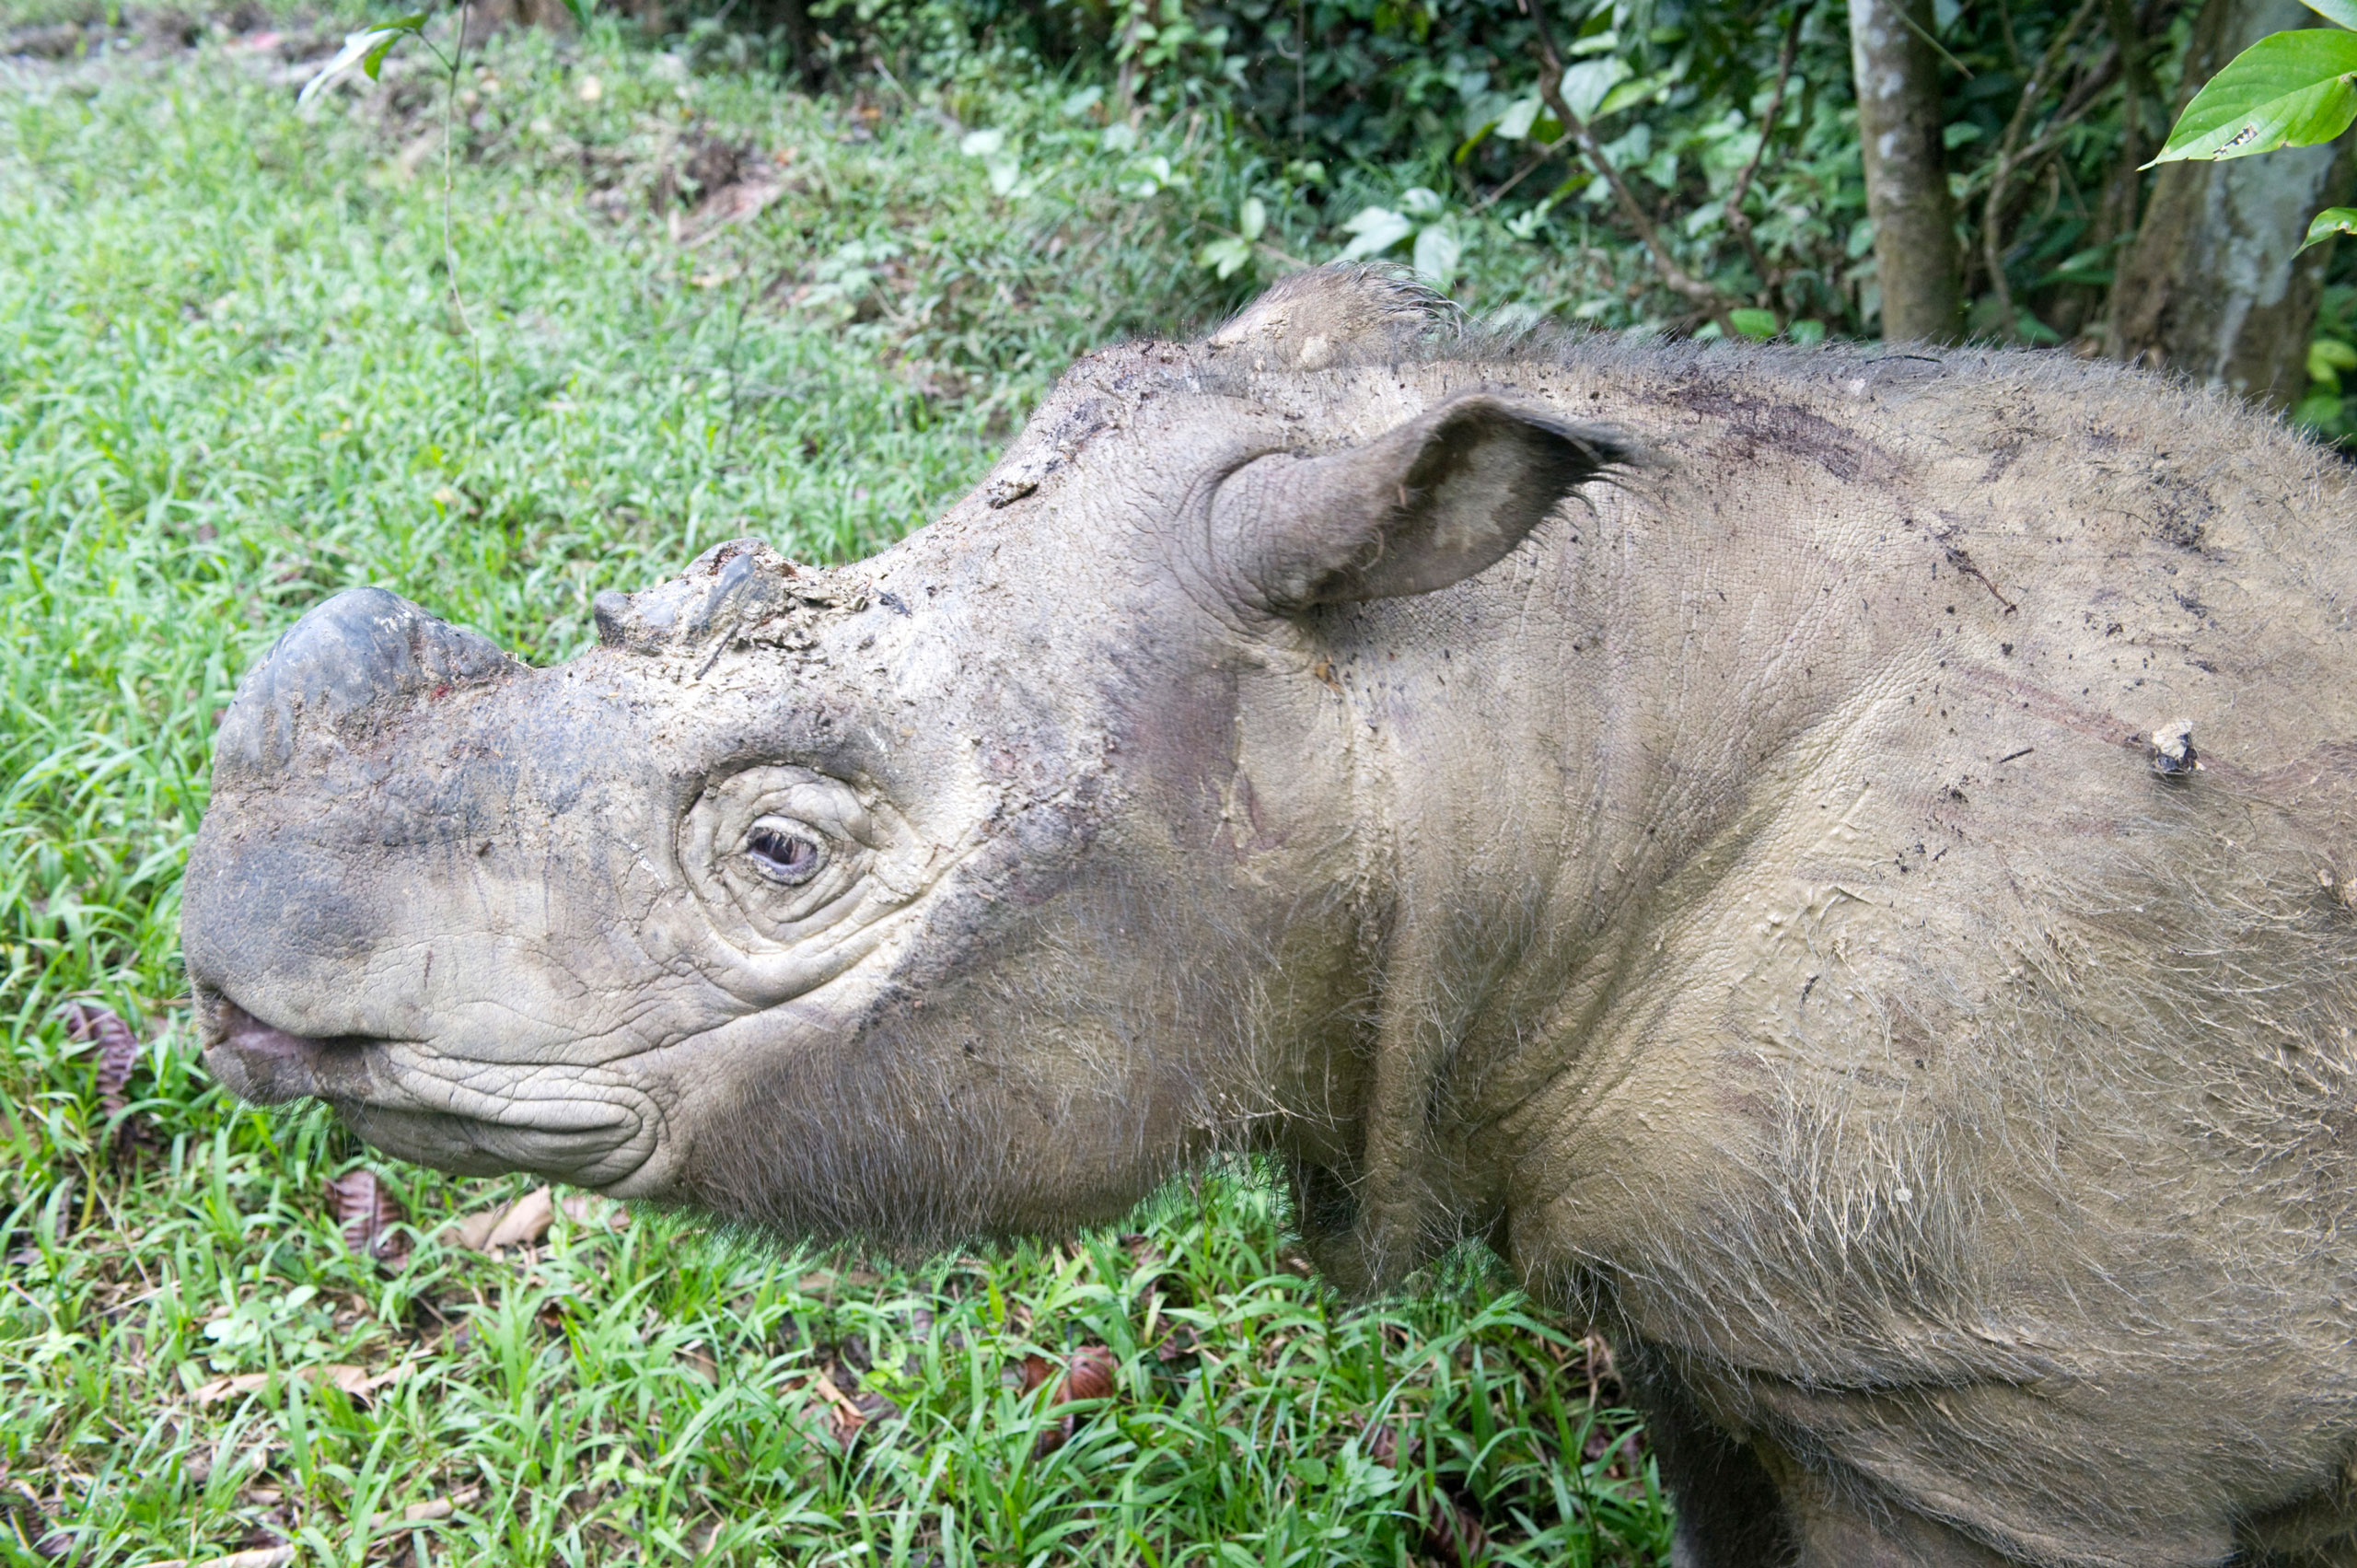 Male Sumatran rhino (Borneo rhino) (Dicerorhinus sumatrensis) in wallow, Tabin Reserve, Sabah, Borneo, Malaysia, Southeast Asia, Asia